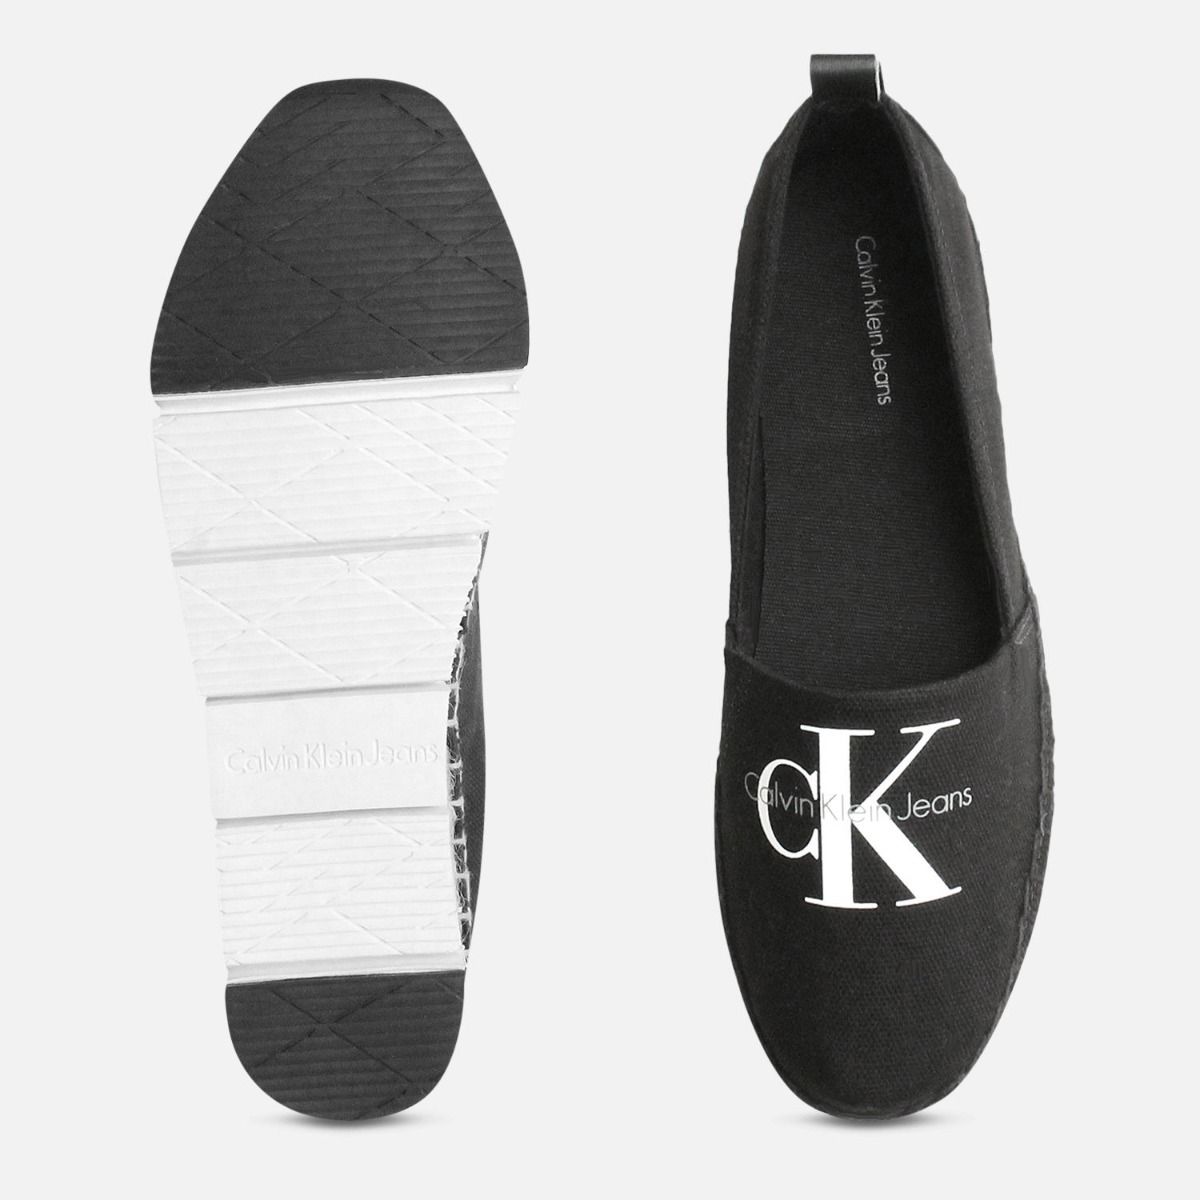 ck canvas shoes